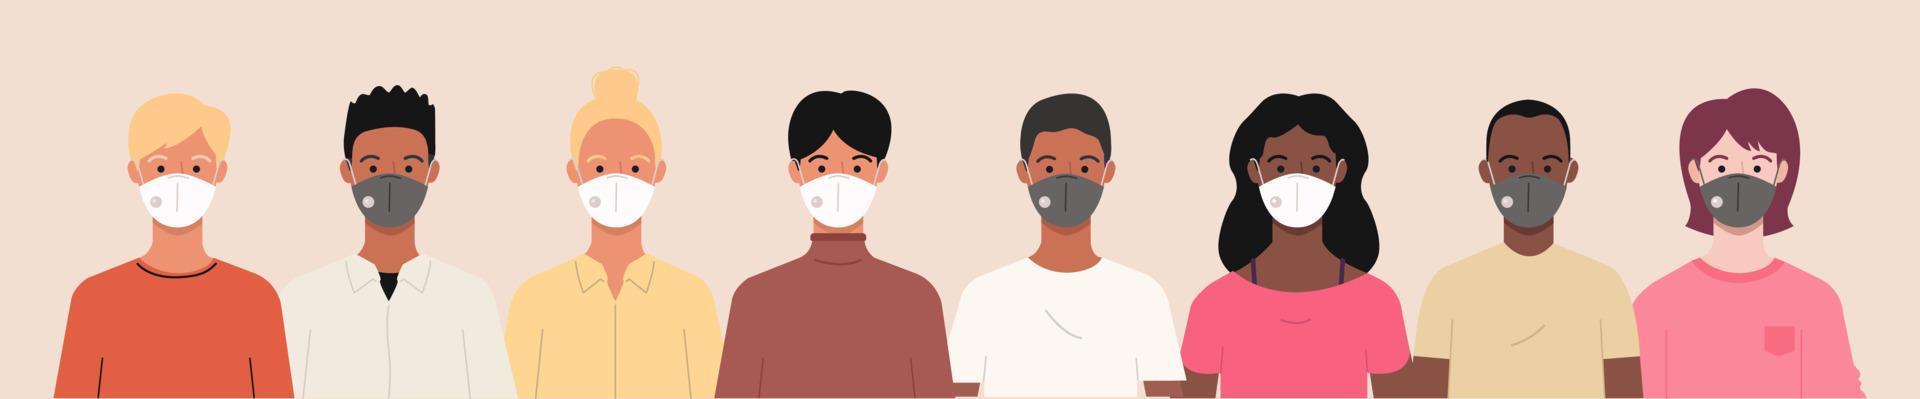 grupp av människor bär medicinsk masker till förhindra coronavirus, covid-19 sjukdom, influensa, luft förorening, förorenade luft, och värld förorening. vektor baner illustration i en platt stil